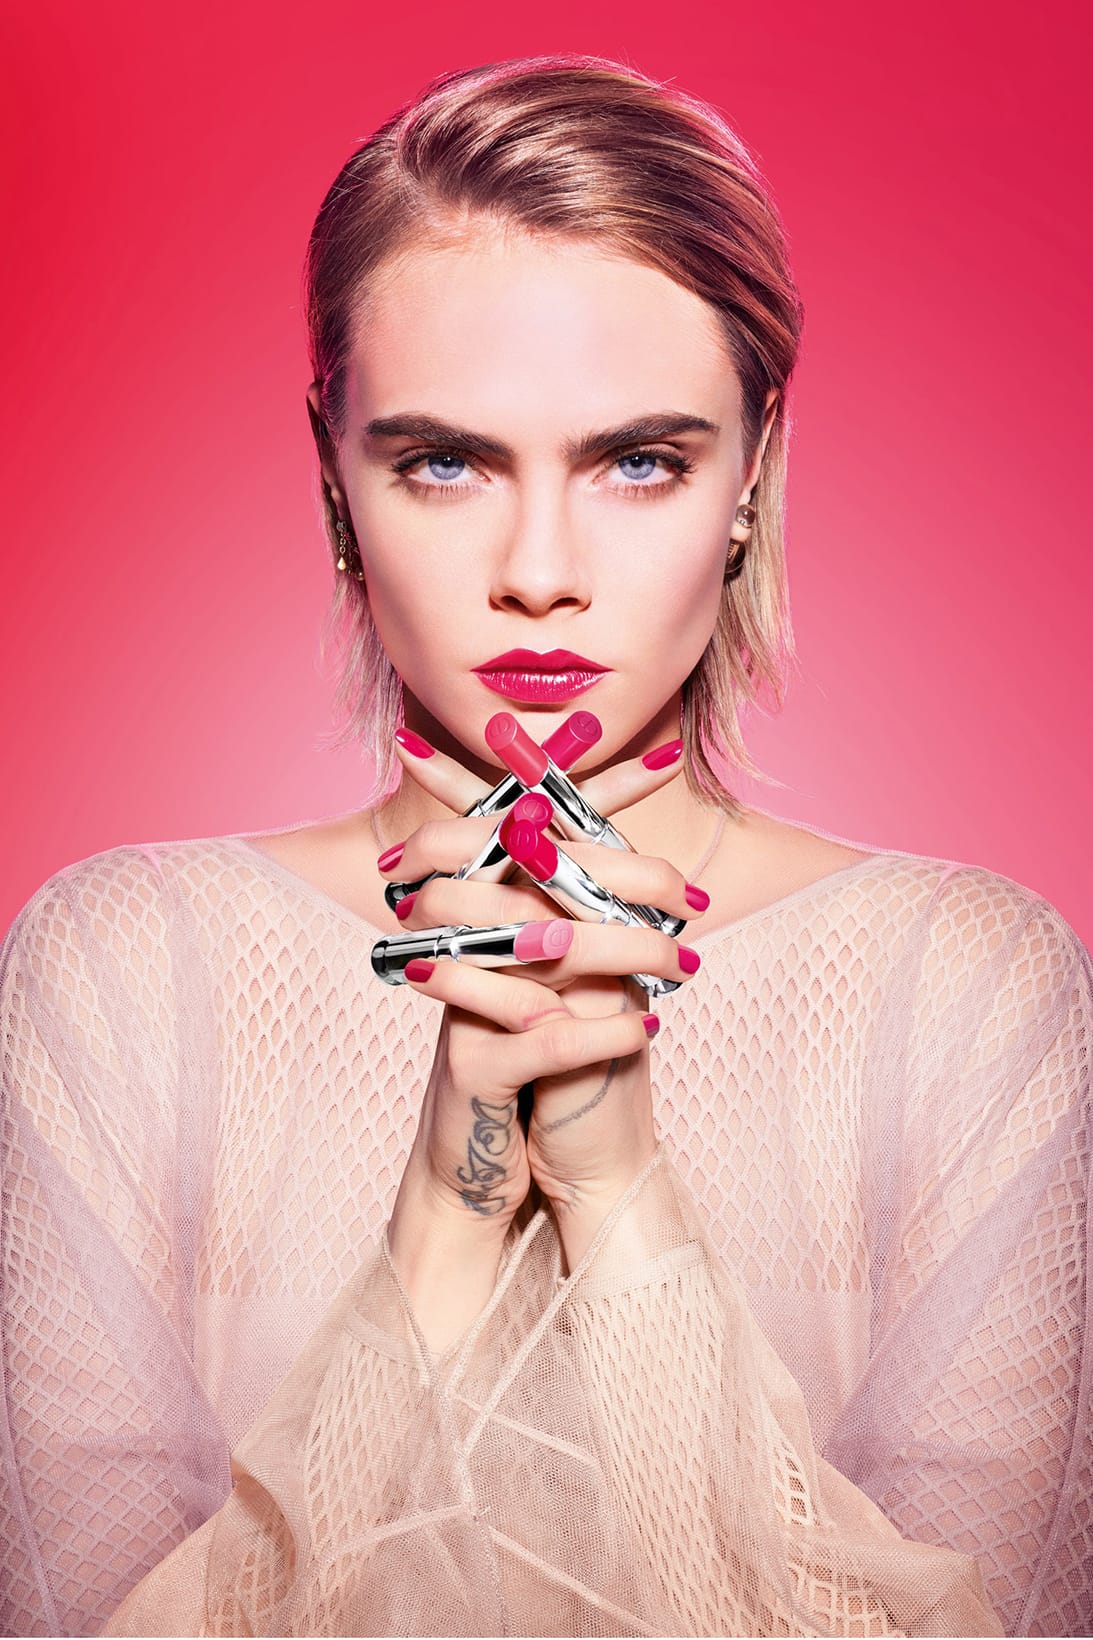 Cara Delevingne in Dior Addict Stellar Shine Lipstick Campaign Pics